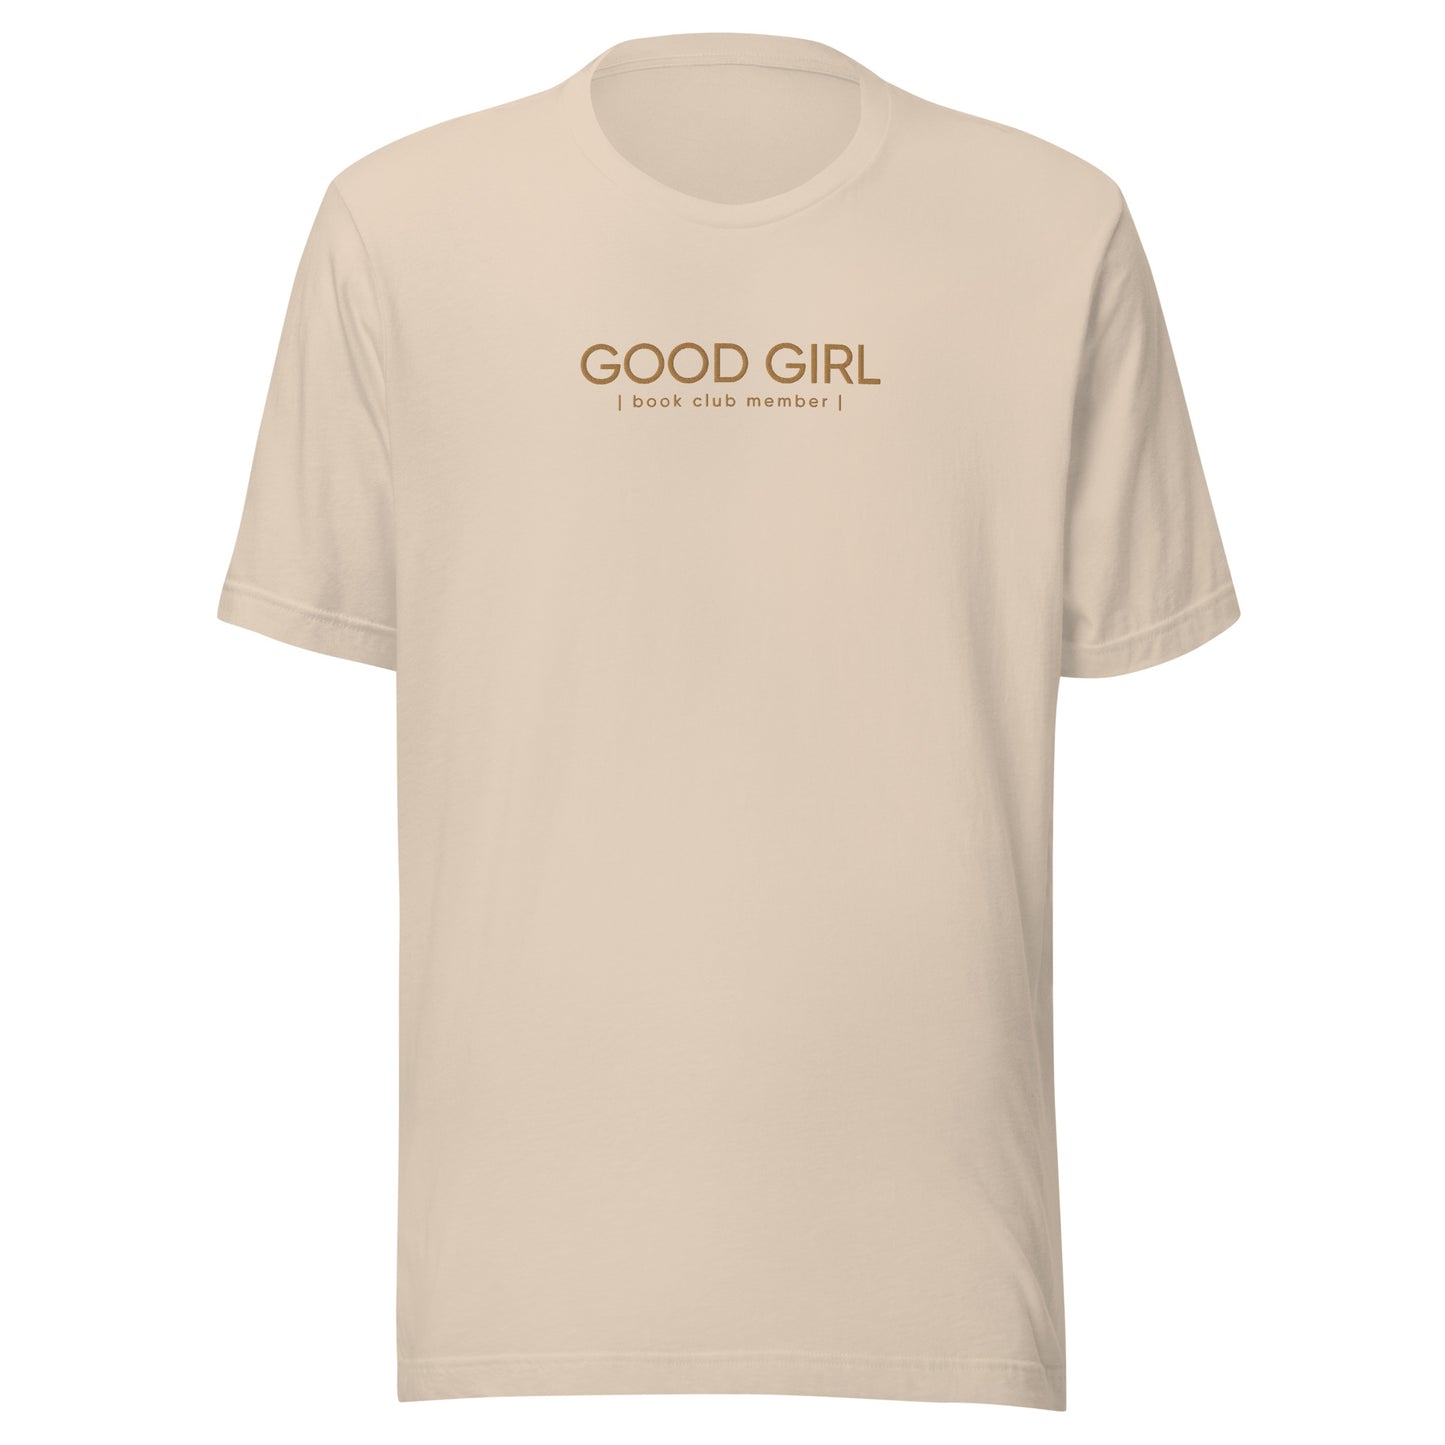 Good Girl Embroidered Shirt